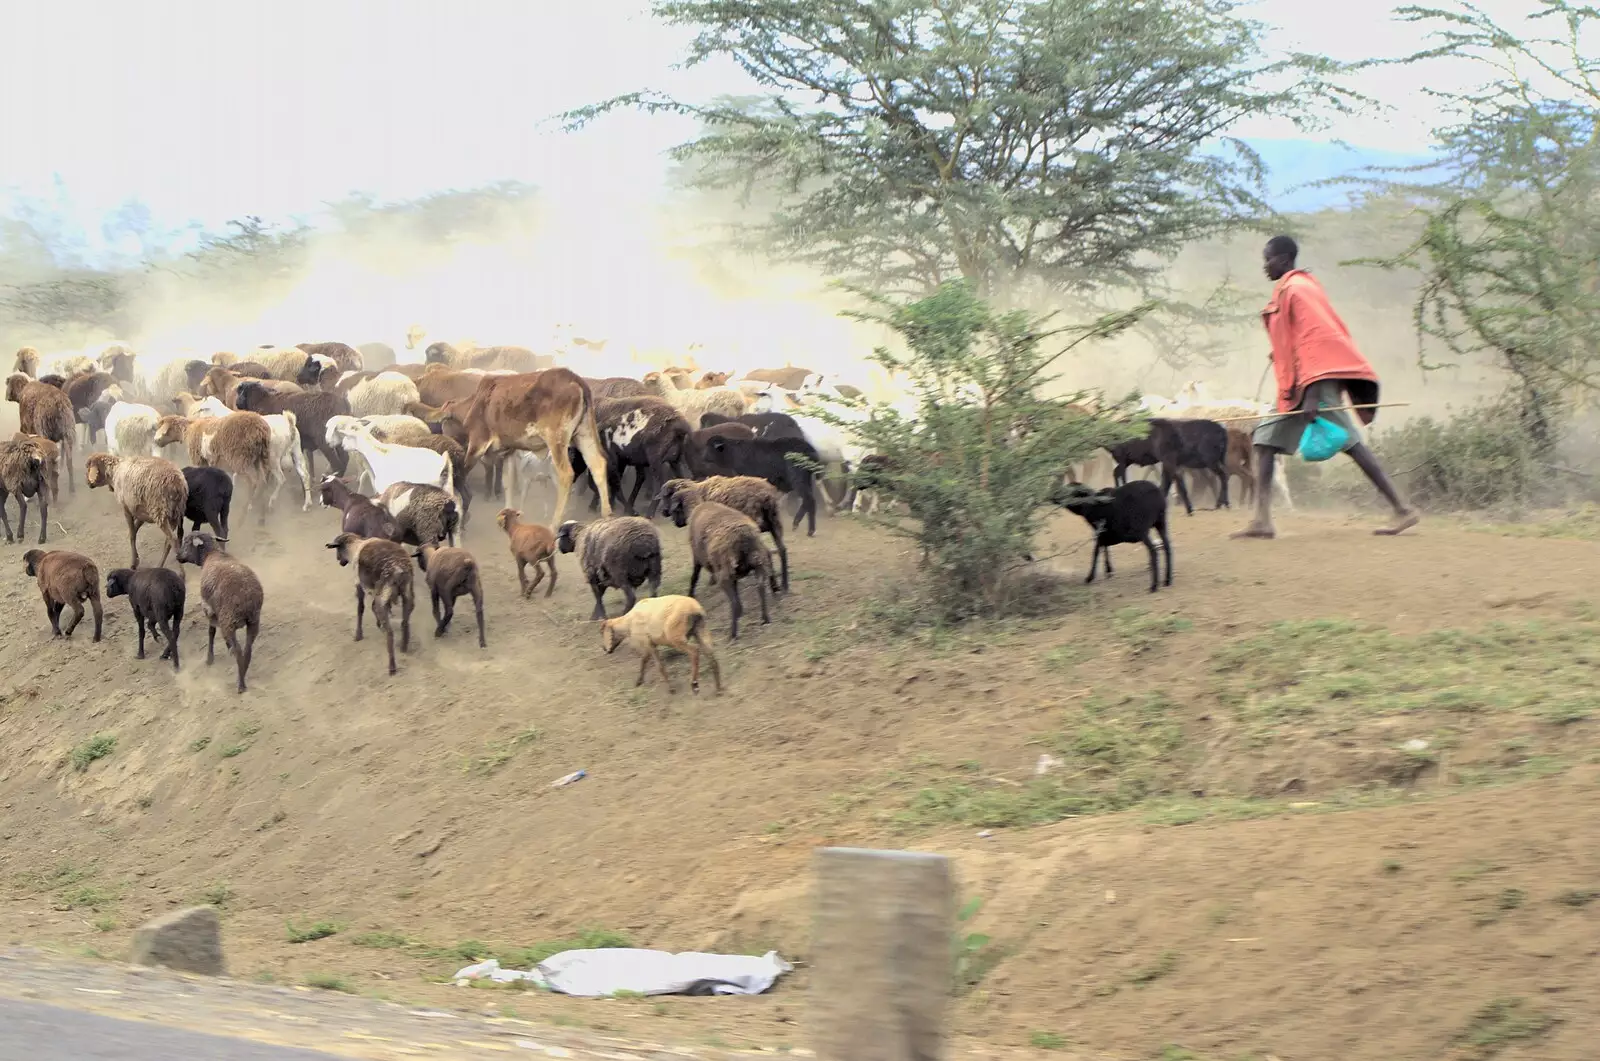 A Maasai herds cows and goats, from Nairobi and the Road to Maasai Mara, Kenya, Africa - 1st November 2010